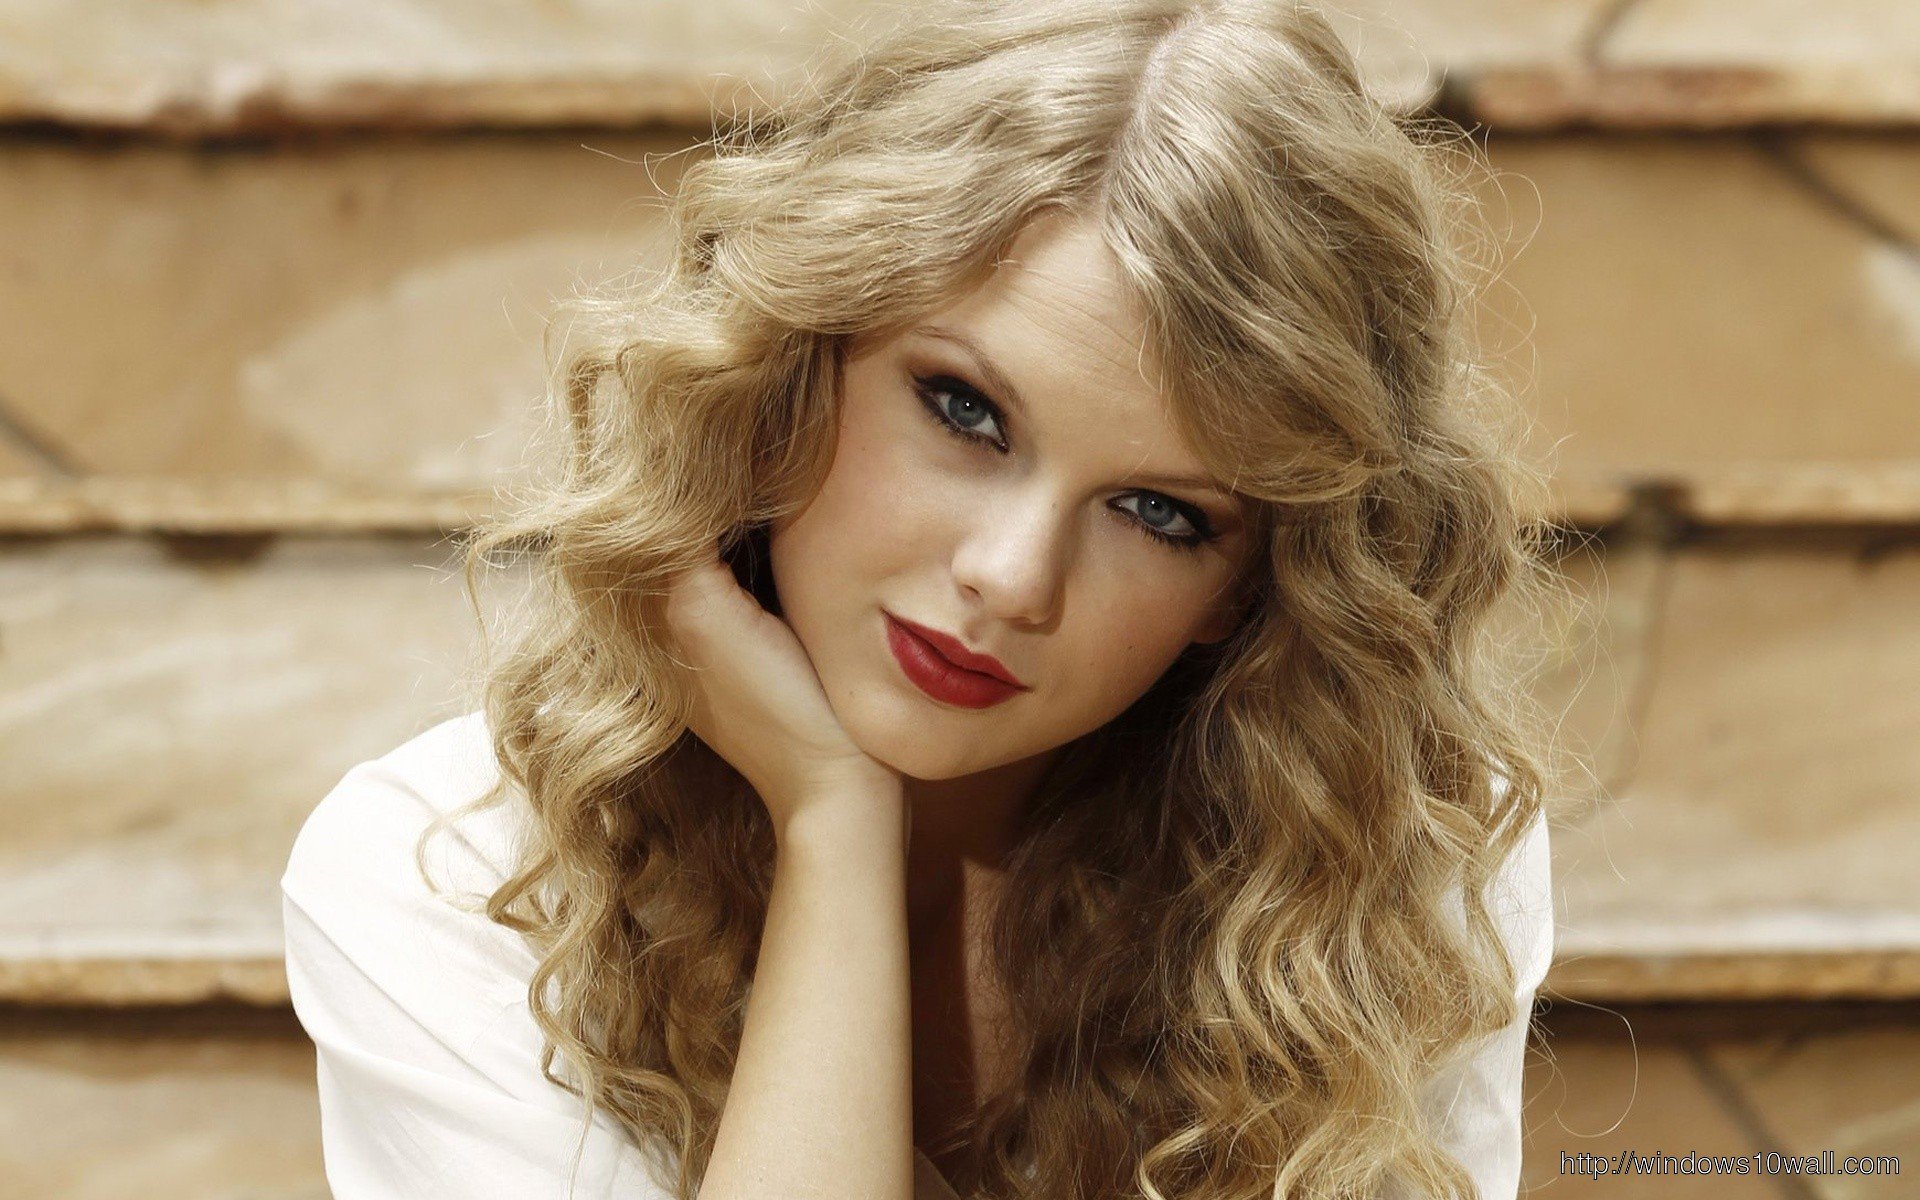 Тейлор Свіфт (Taylor Swift). Біографія. Фото. Особисте життя